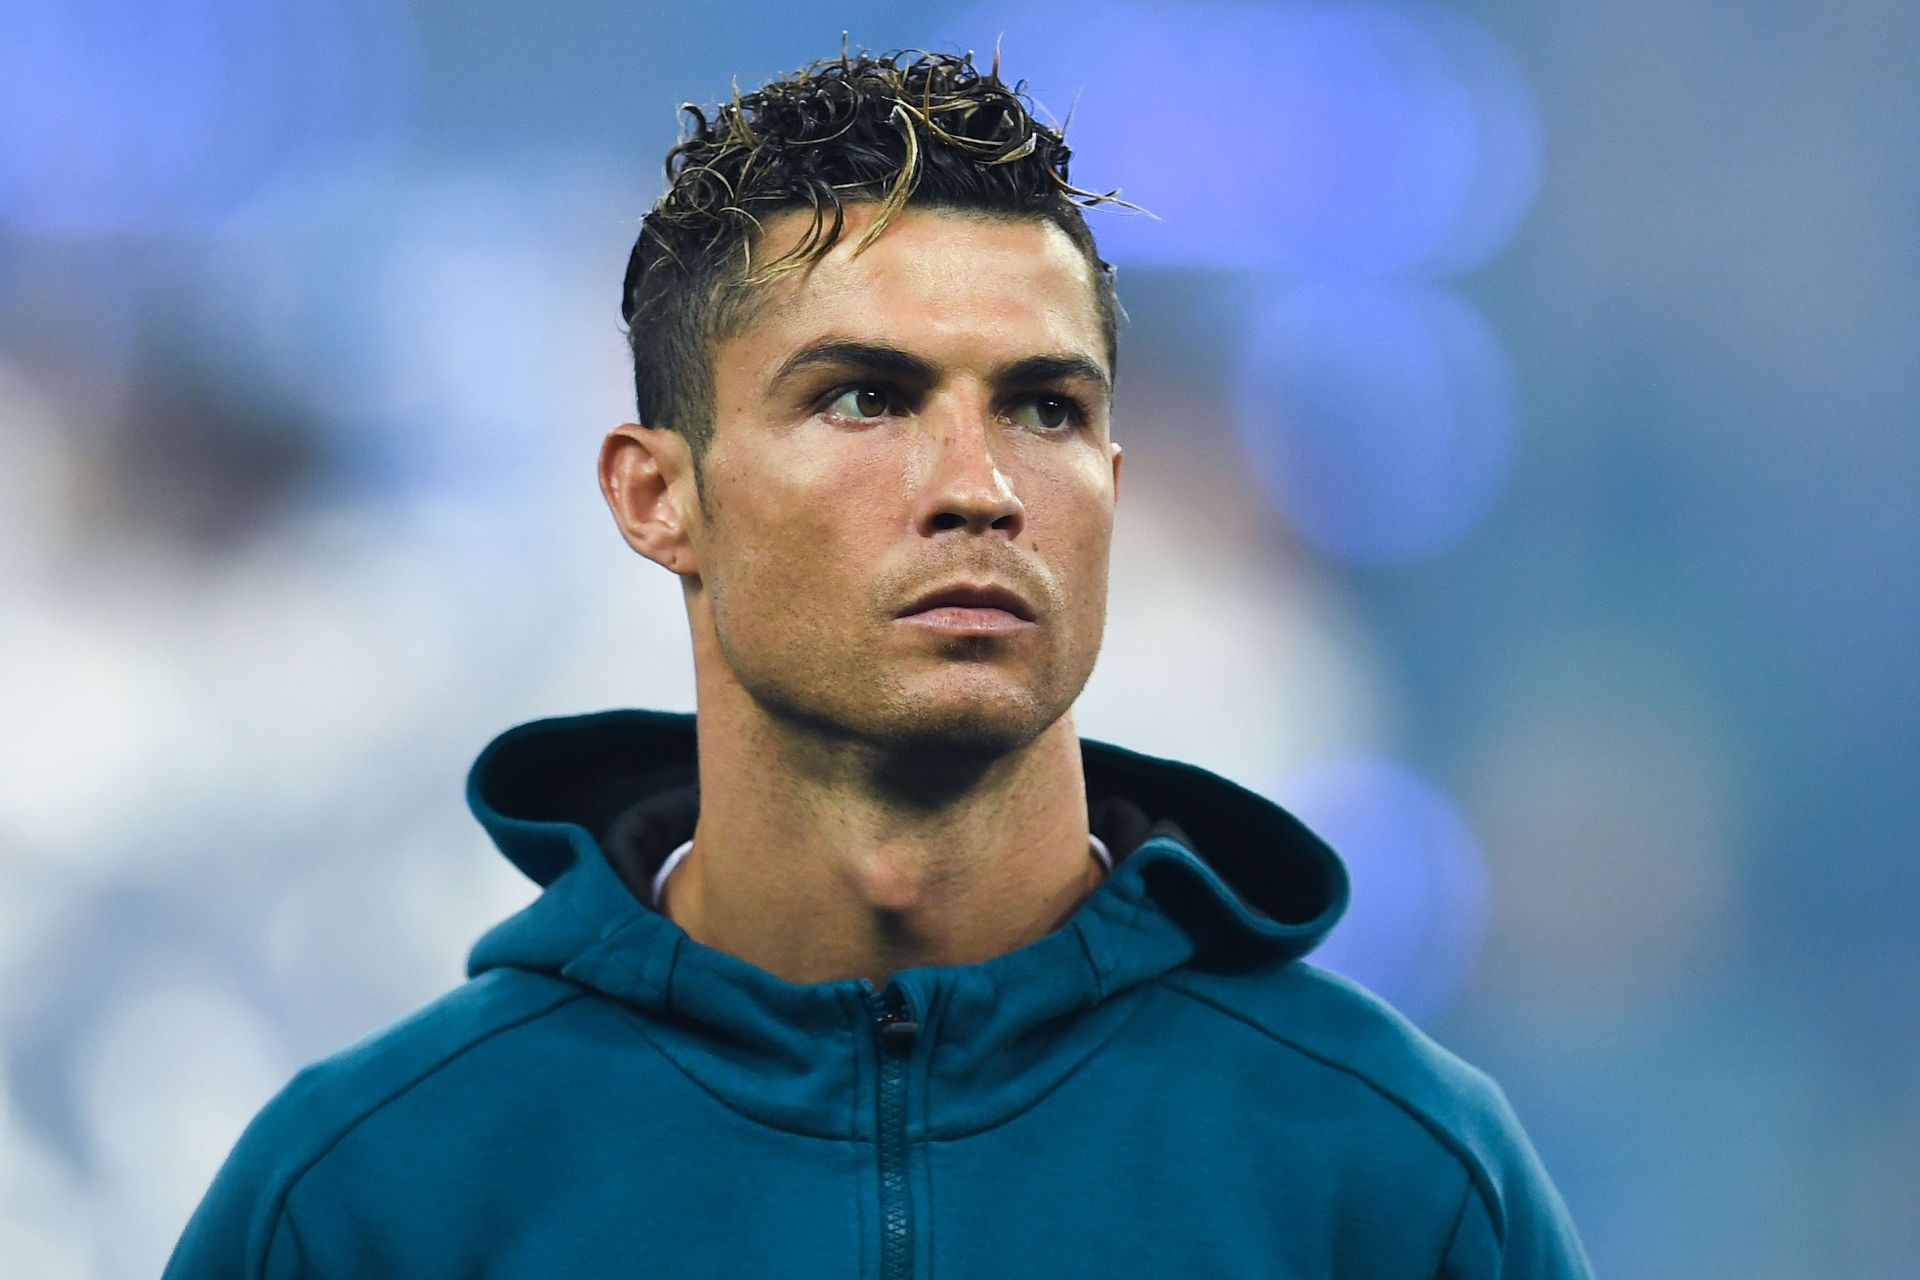 Cristiano Ronaldo (via Getty Images)